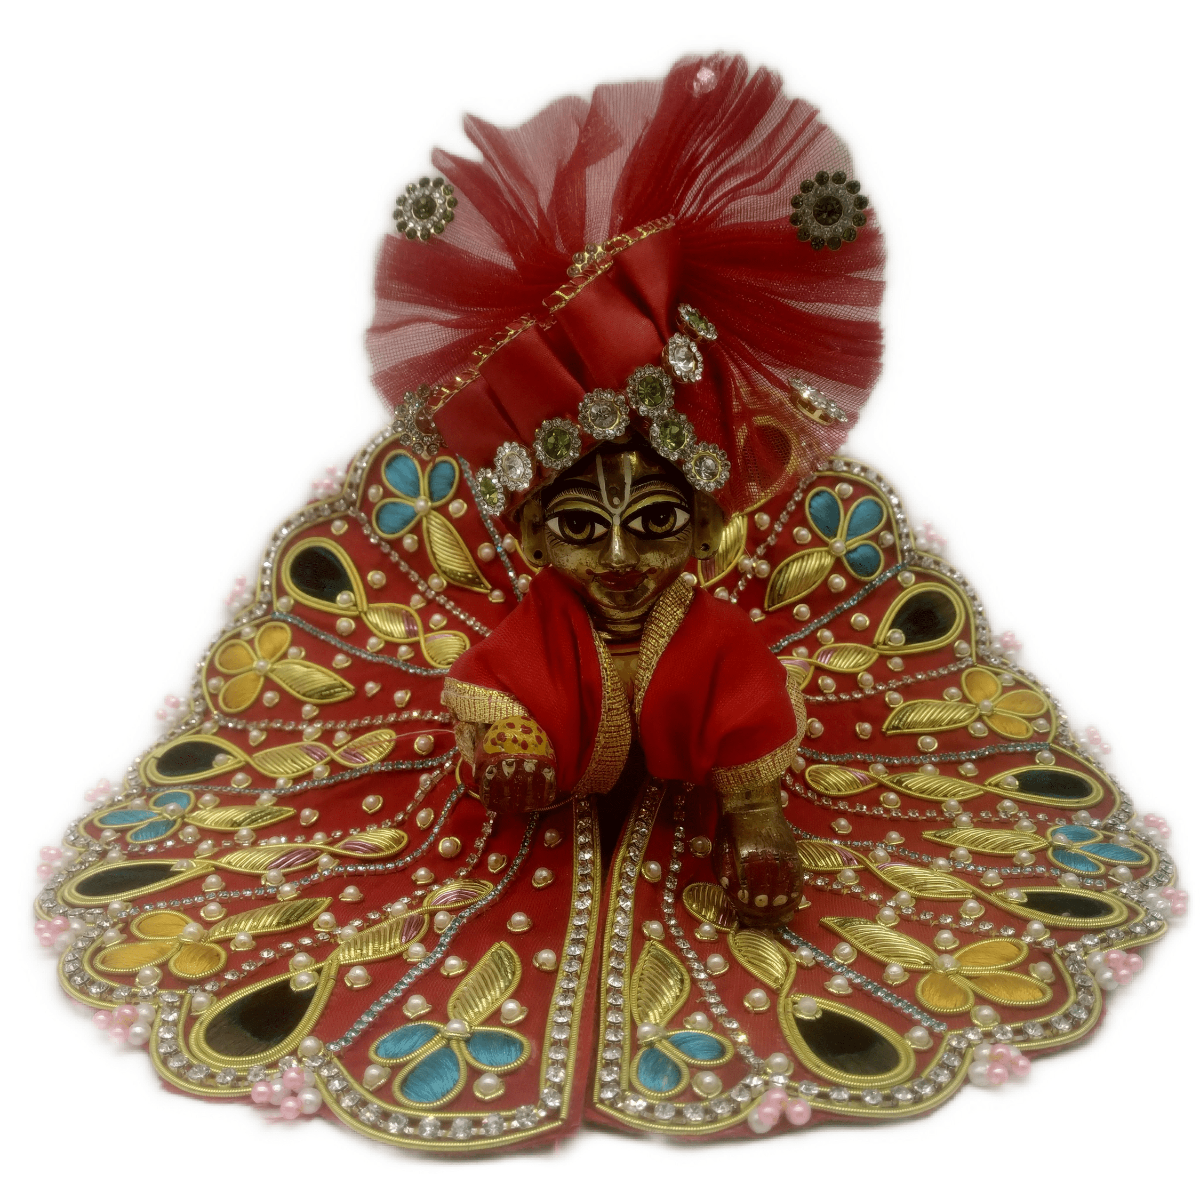 Stone & Zari decorated  red kanha ji dress